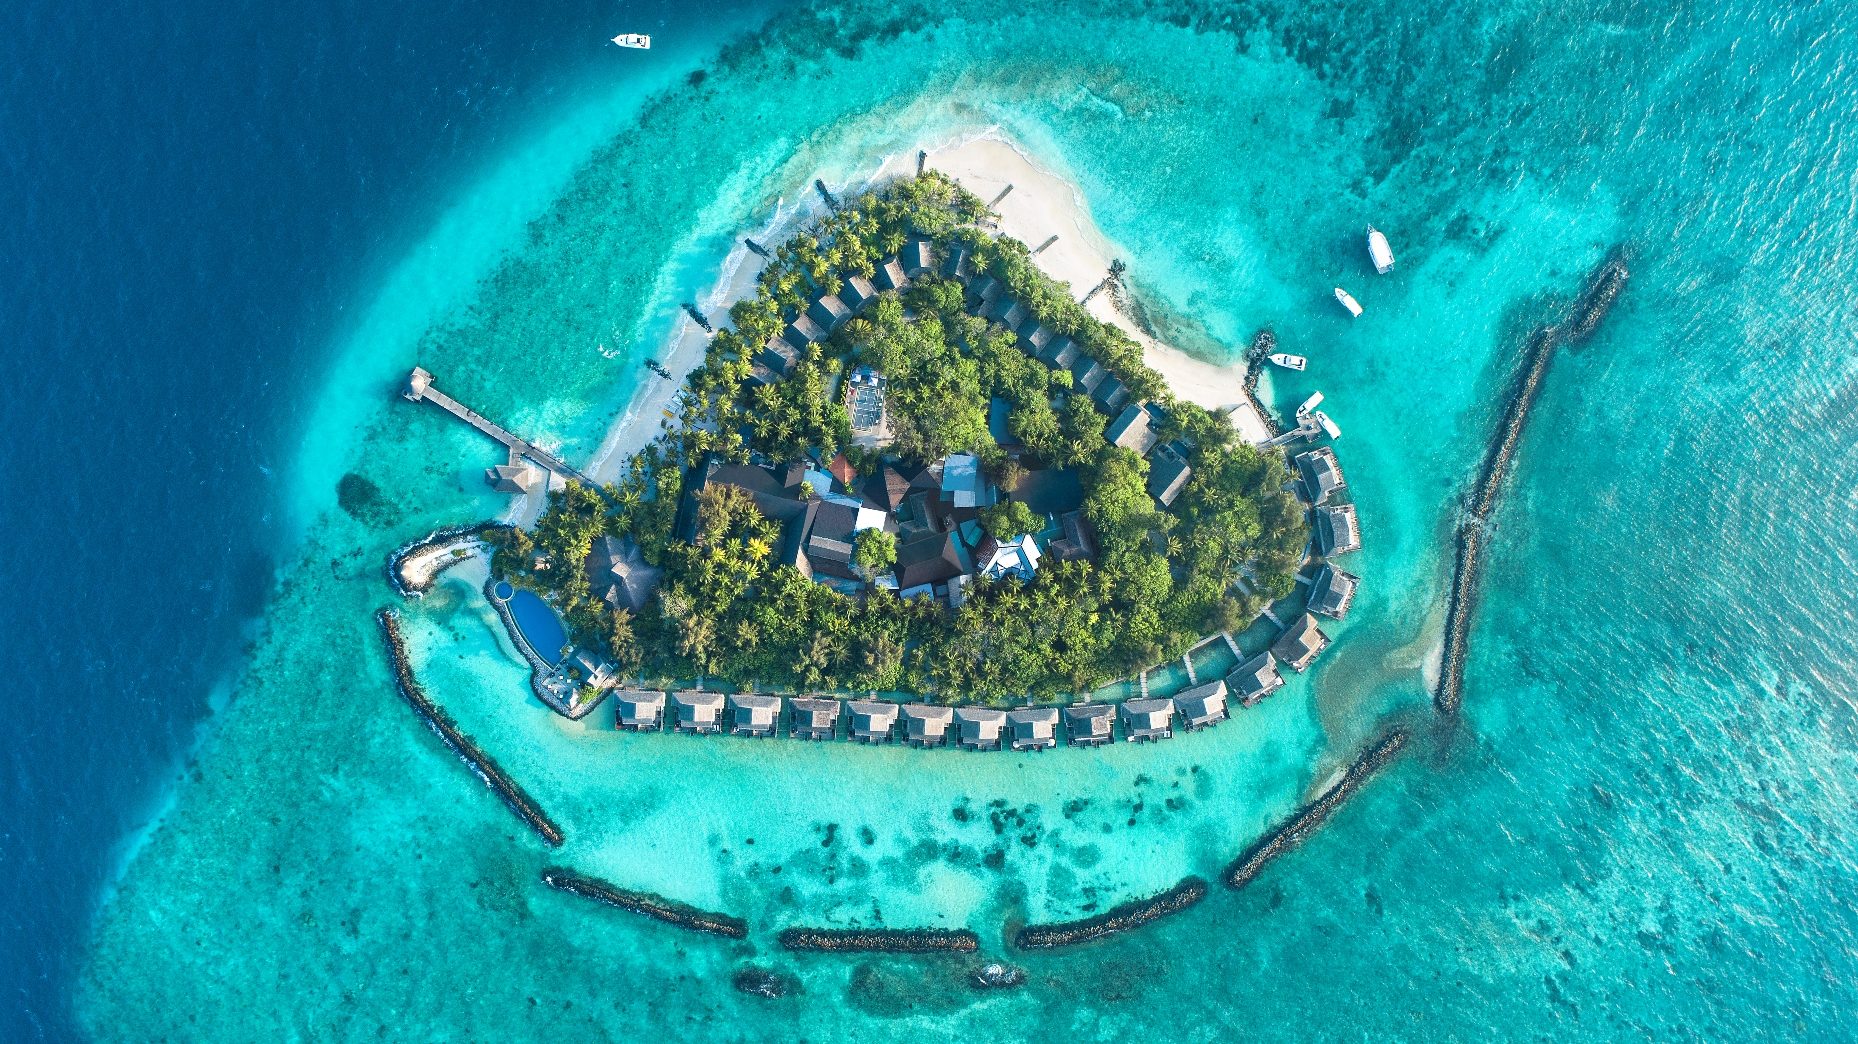 سلسلة فنادق تاج في المالديف تعود إلى العمل في ظل معايير صحية مشددة